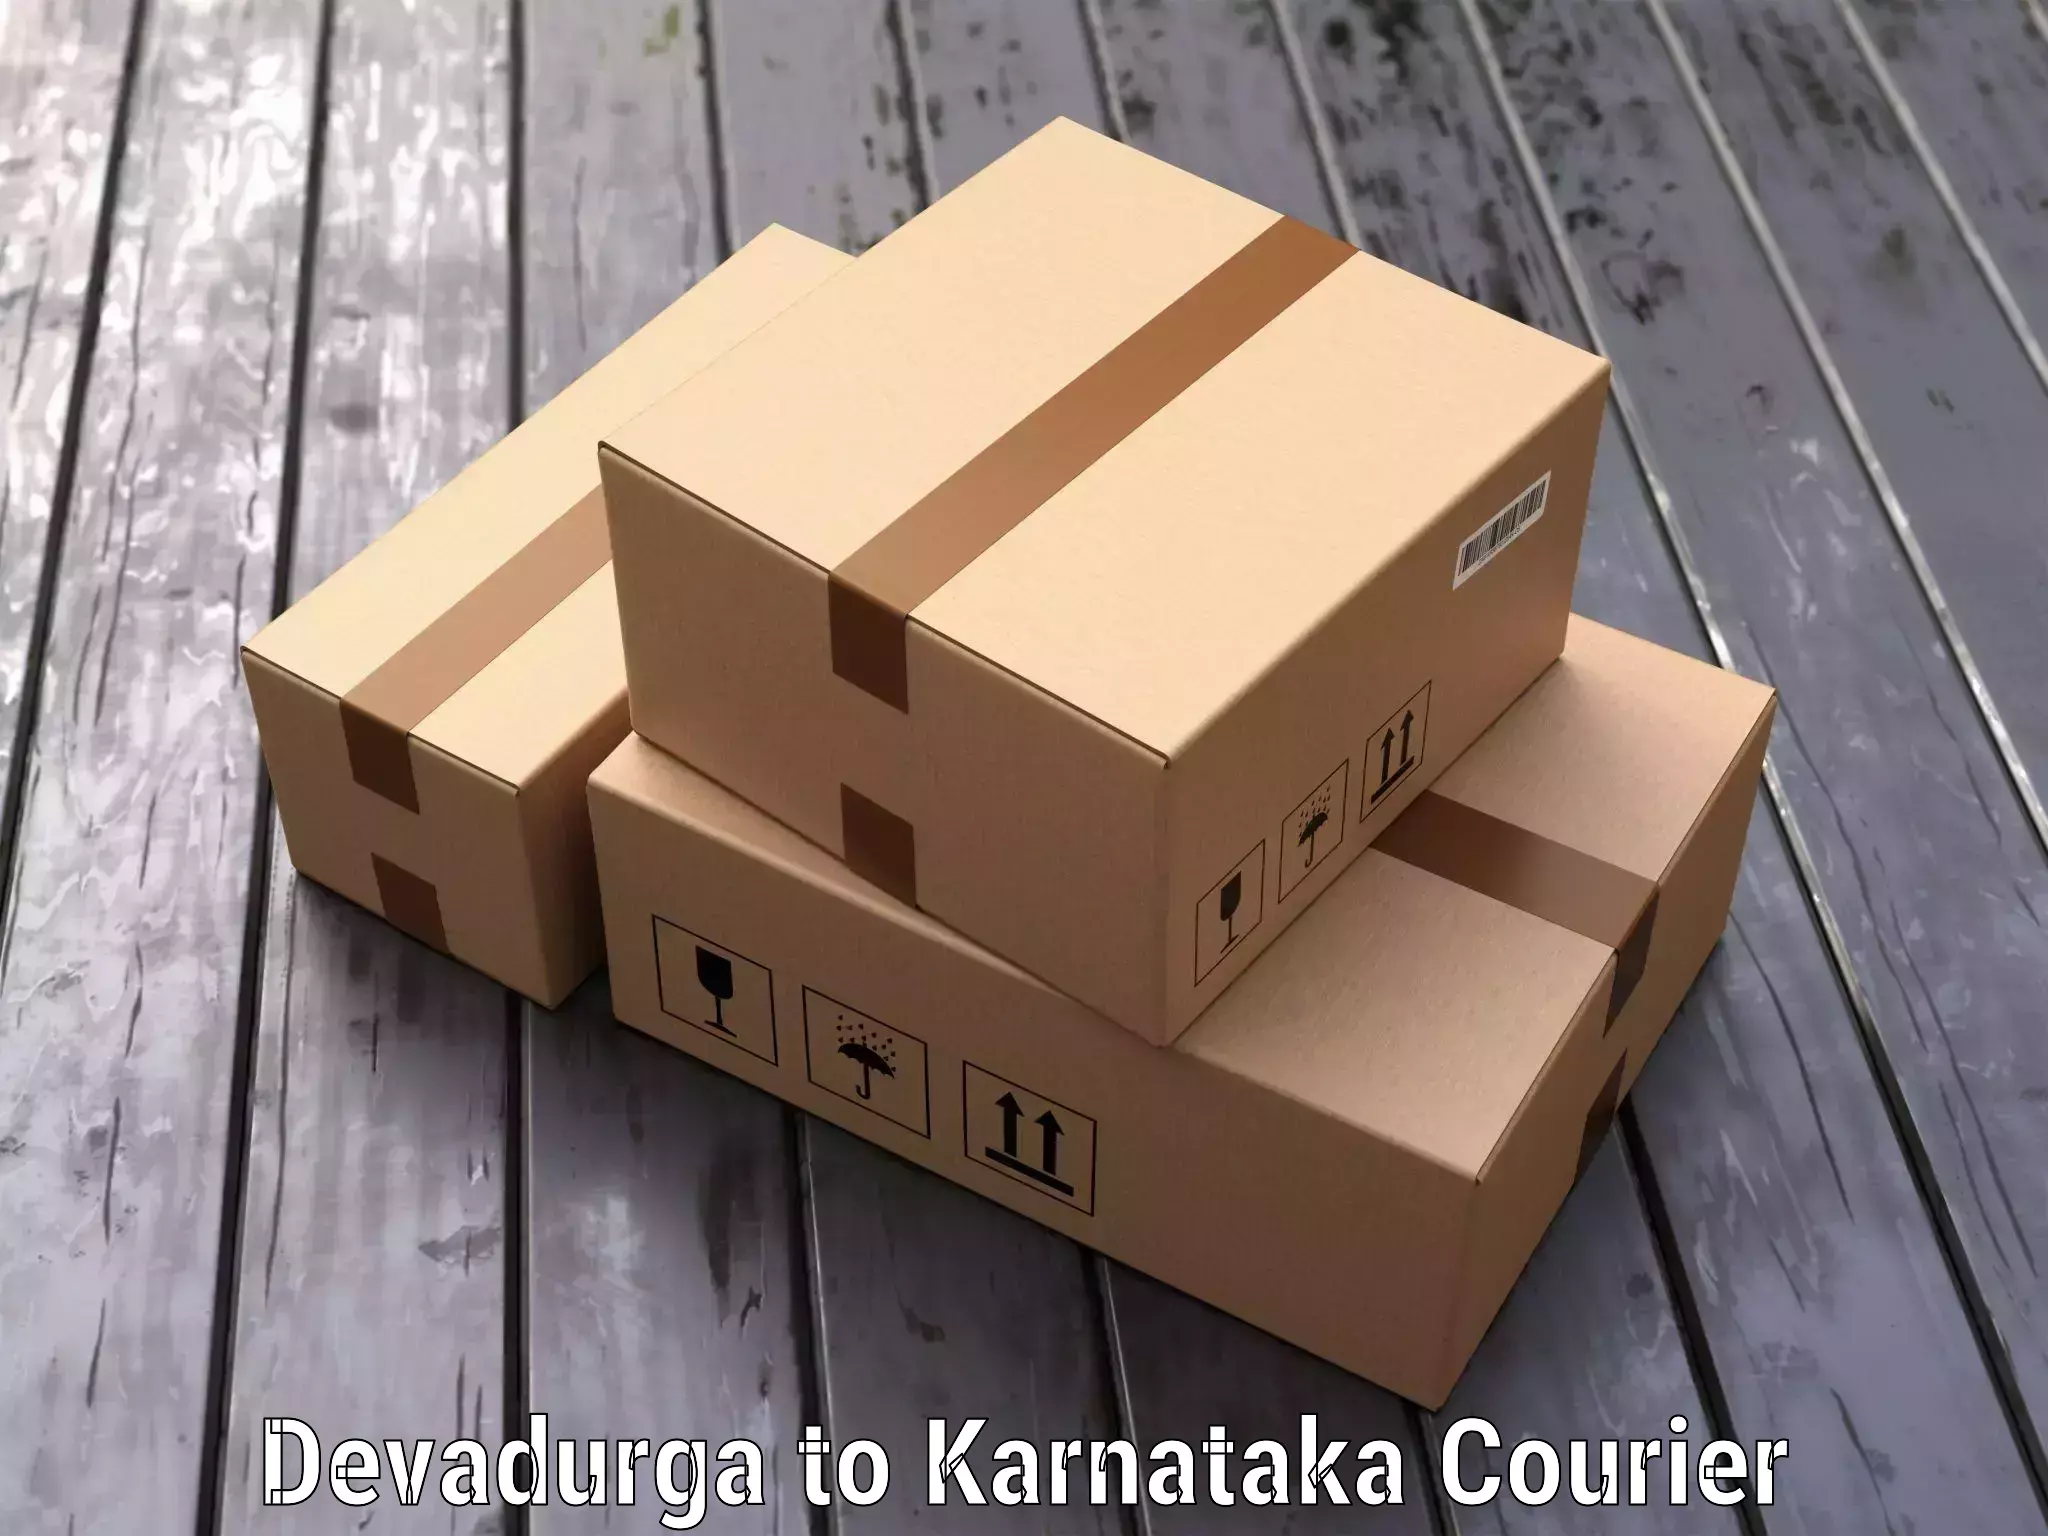 Online luggage shipping booking Devadurga to Karnataka